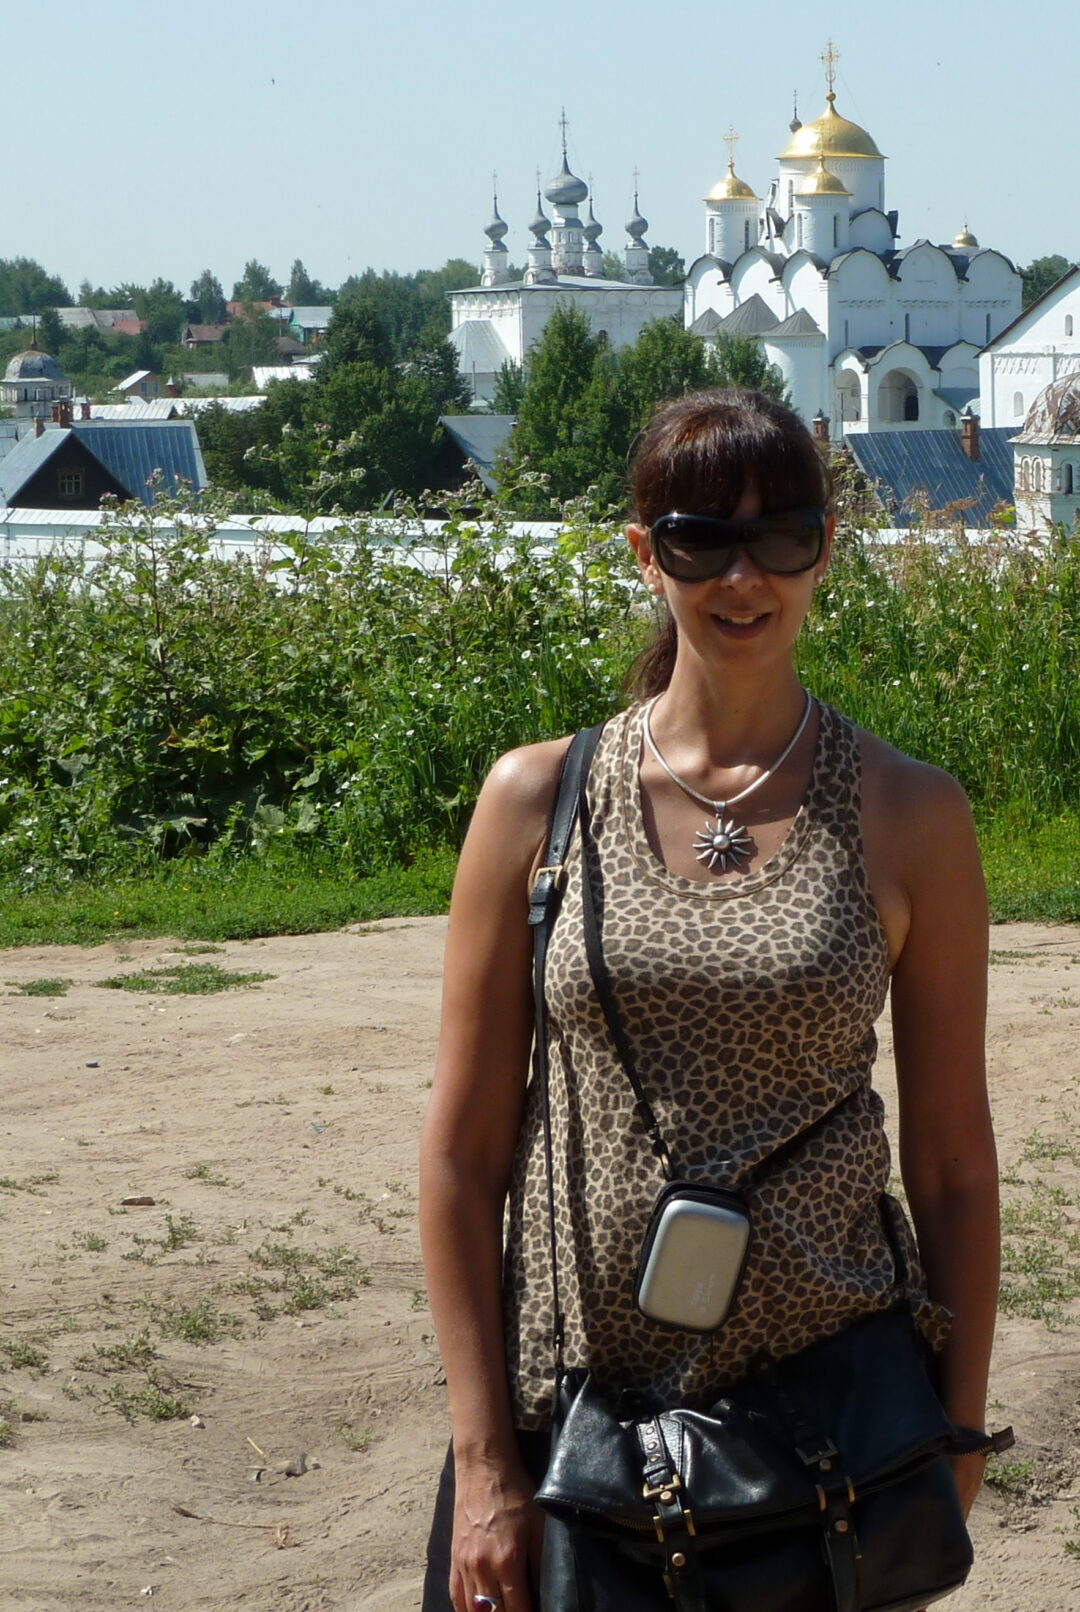 Visitando ciudades medievales Suzdal